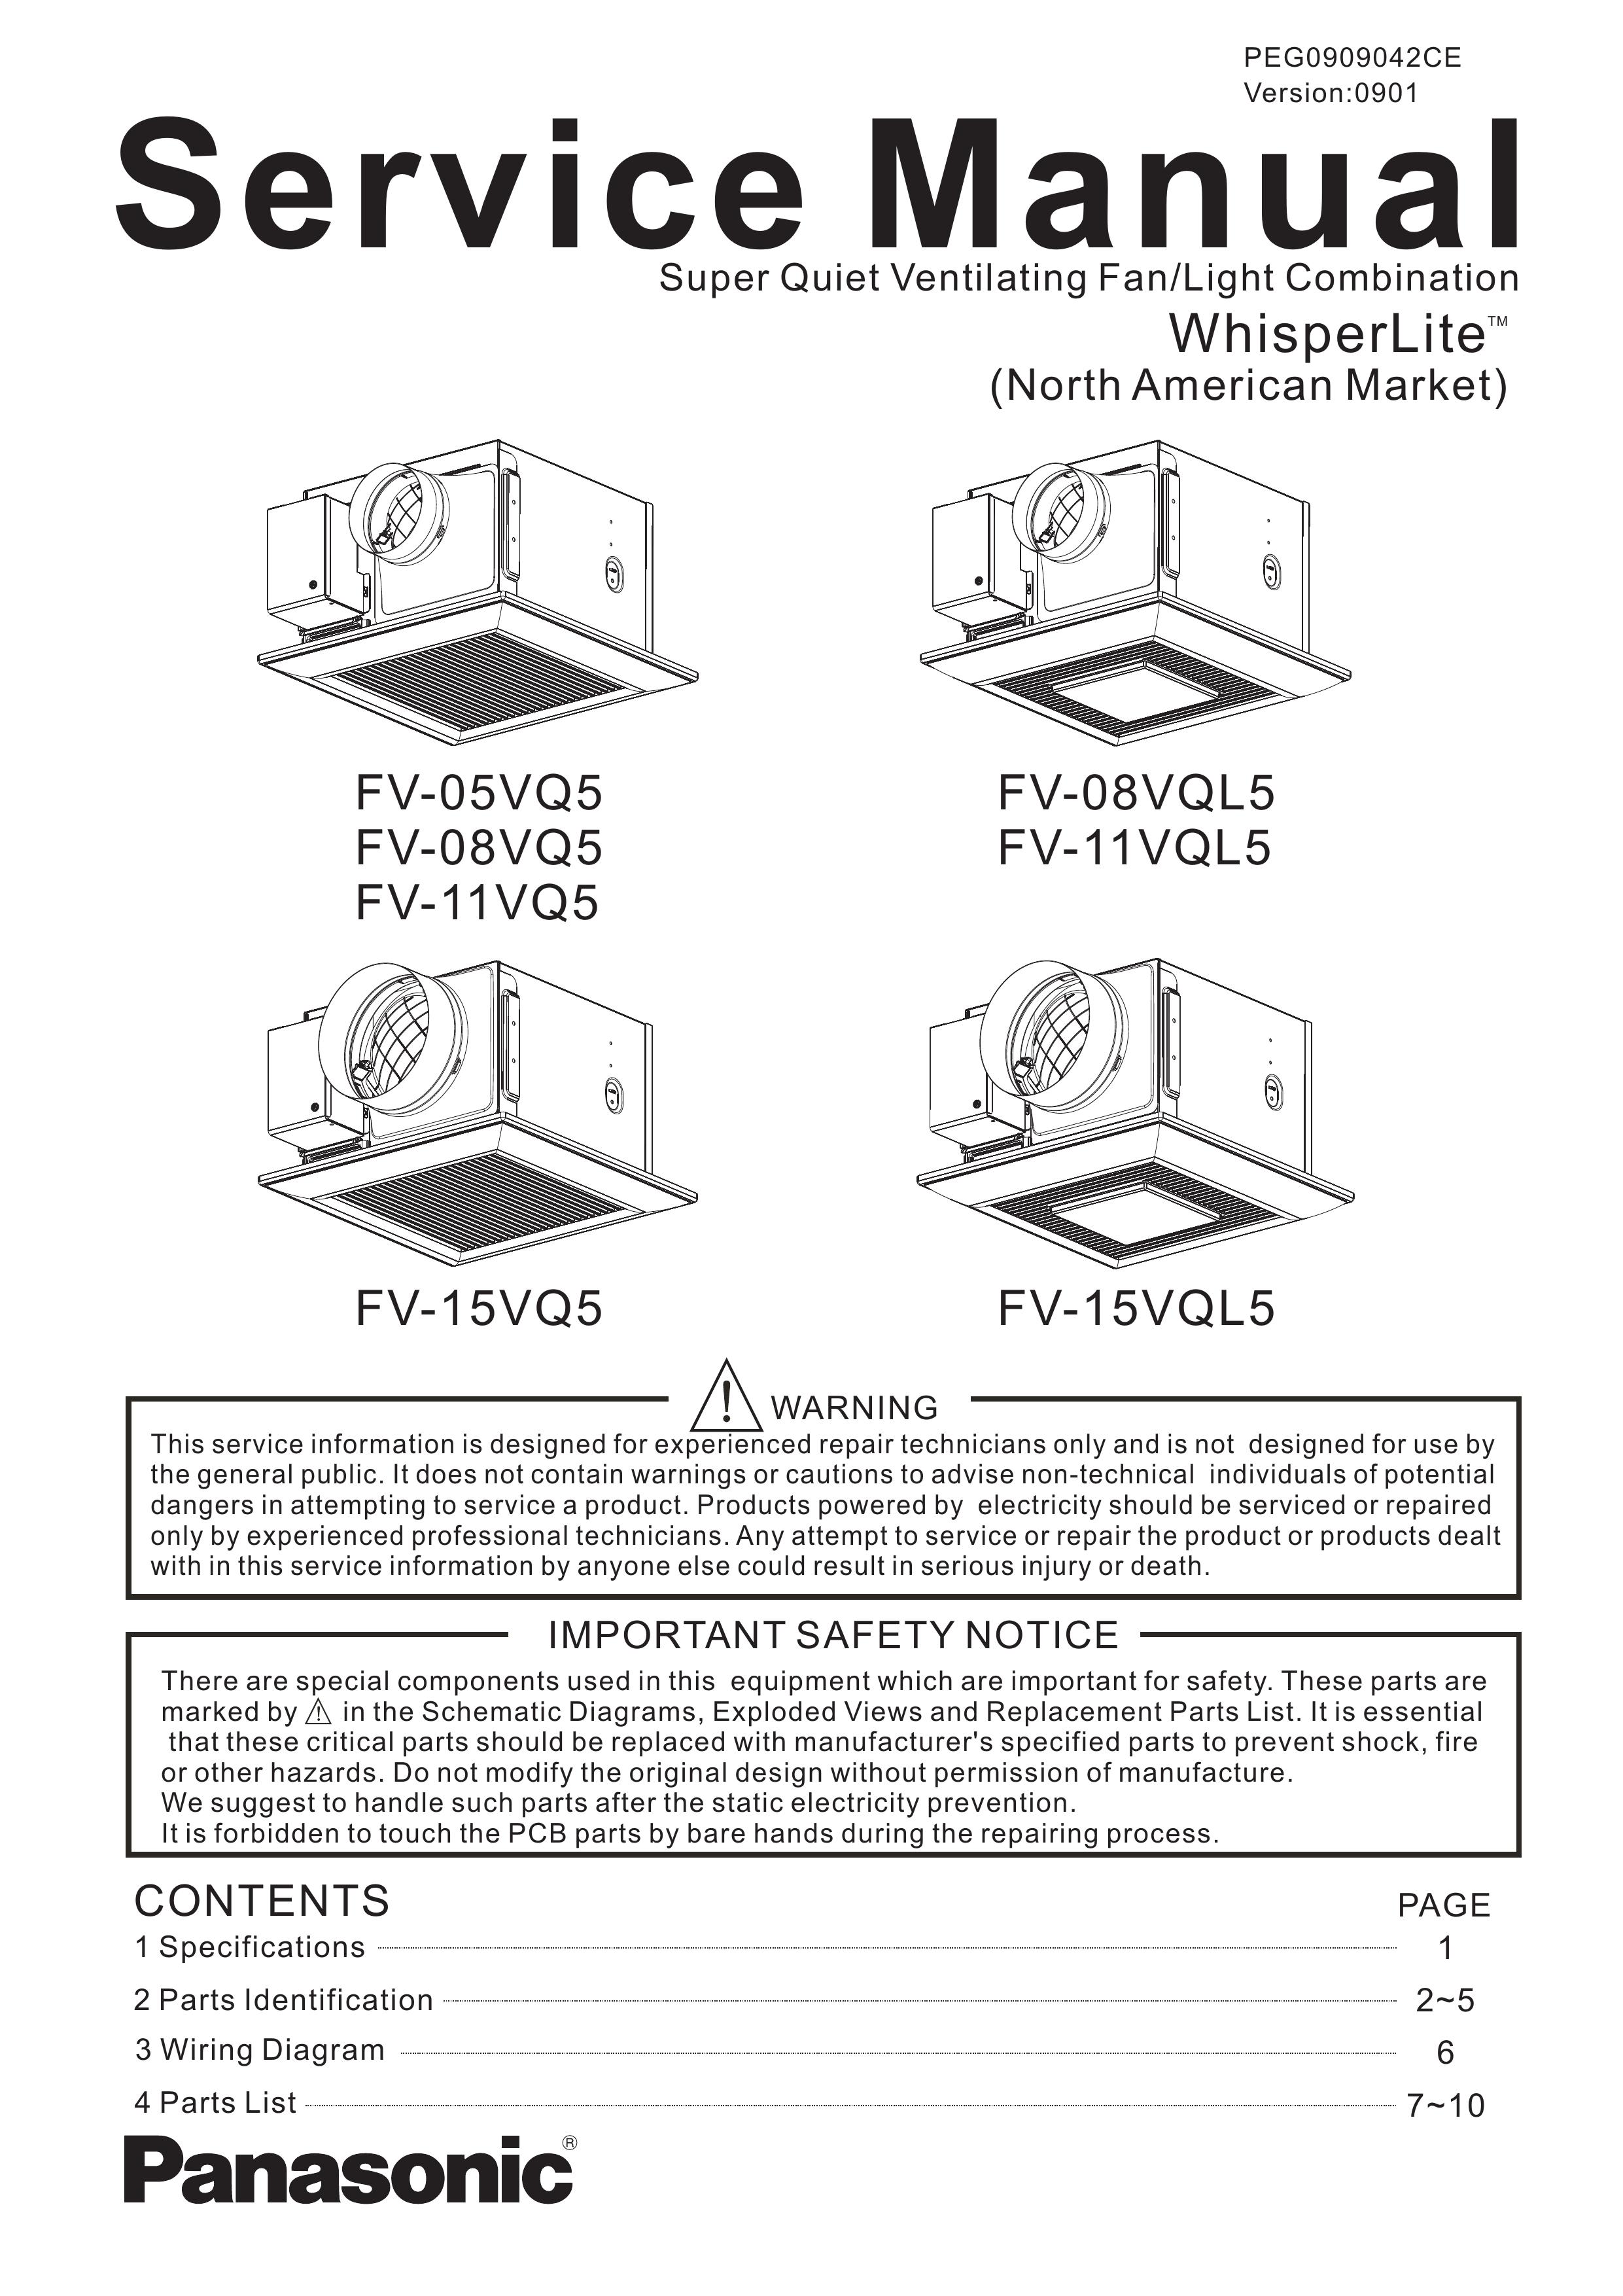 Panasonic FV-11VQ5 Ventilation Hood User Manual